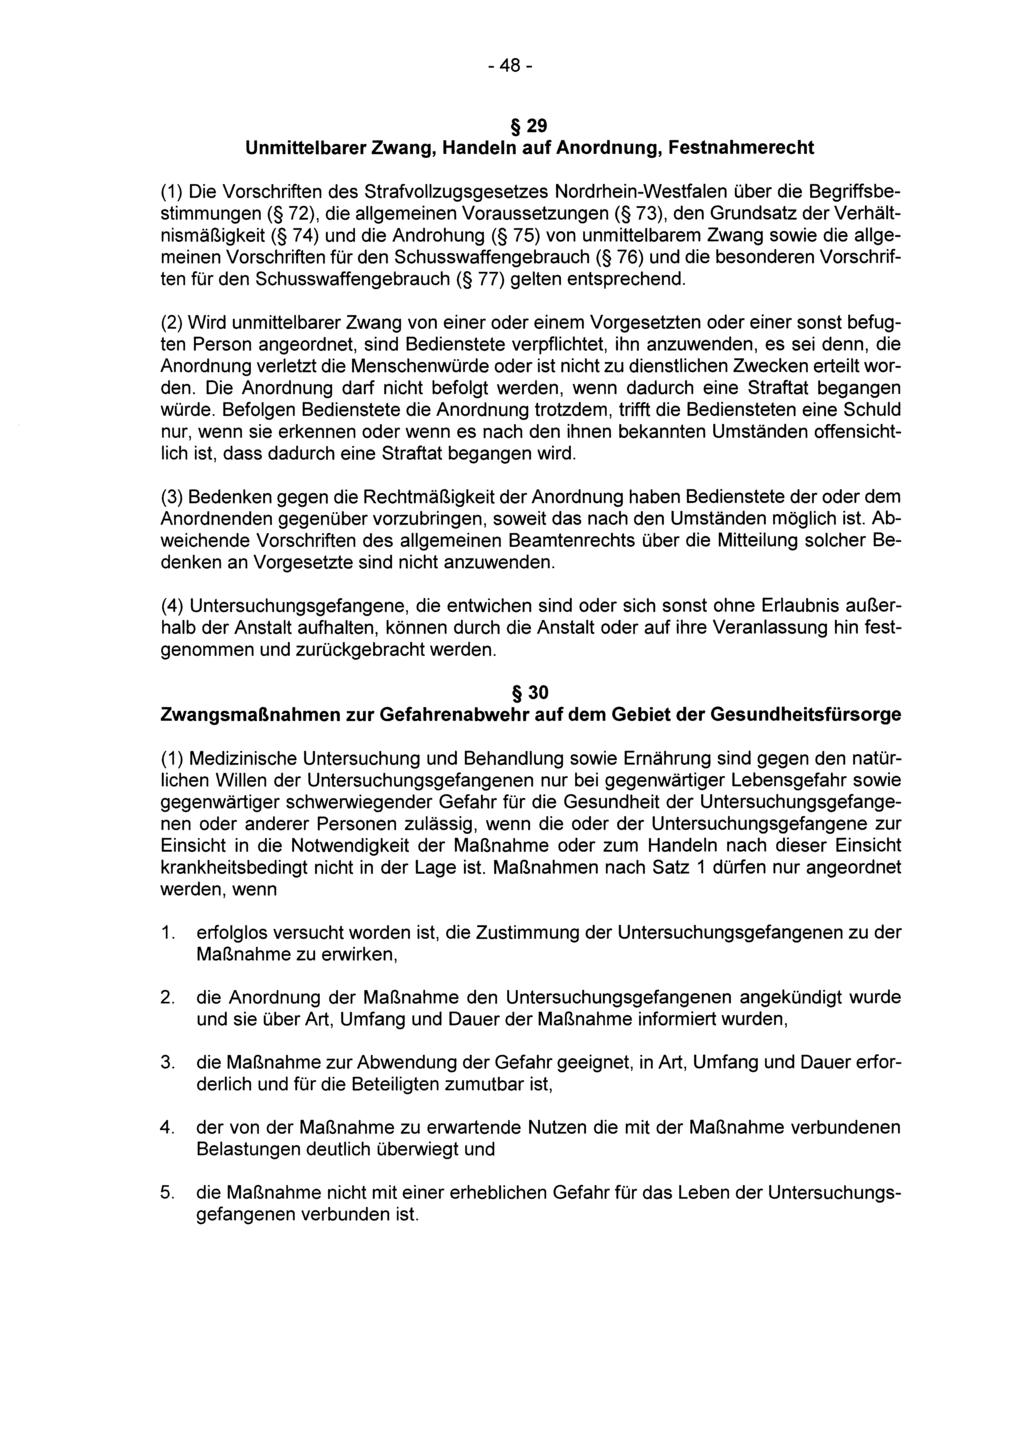 - 48-29 Unmittelbarer Zwang, Handeln auf Anordnung, Festnahmerecht (1) Die Vorschriften des Strafvollzugsgesetzes Nordrhein-Westfalen über die Begriffsbestimmungen ( 72), die allgemeinen